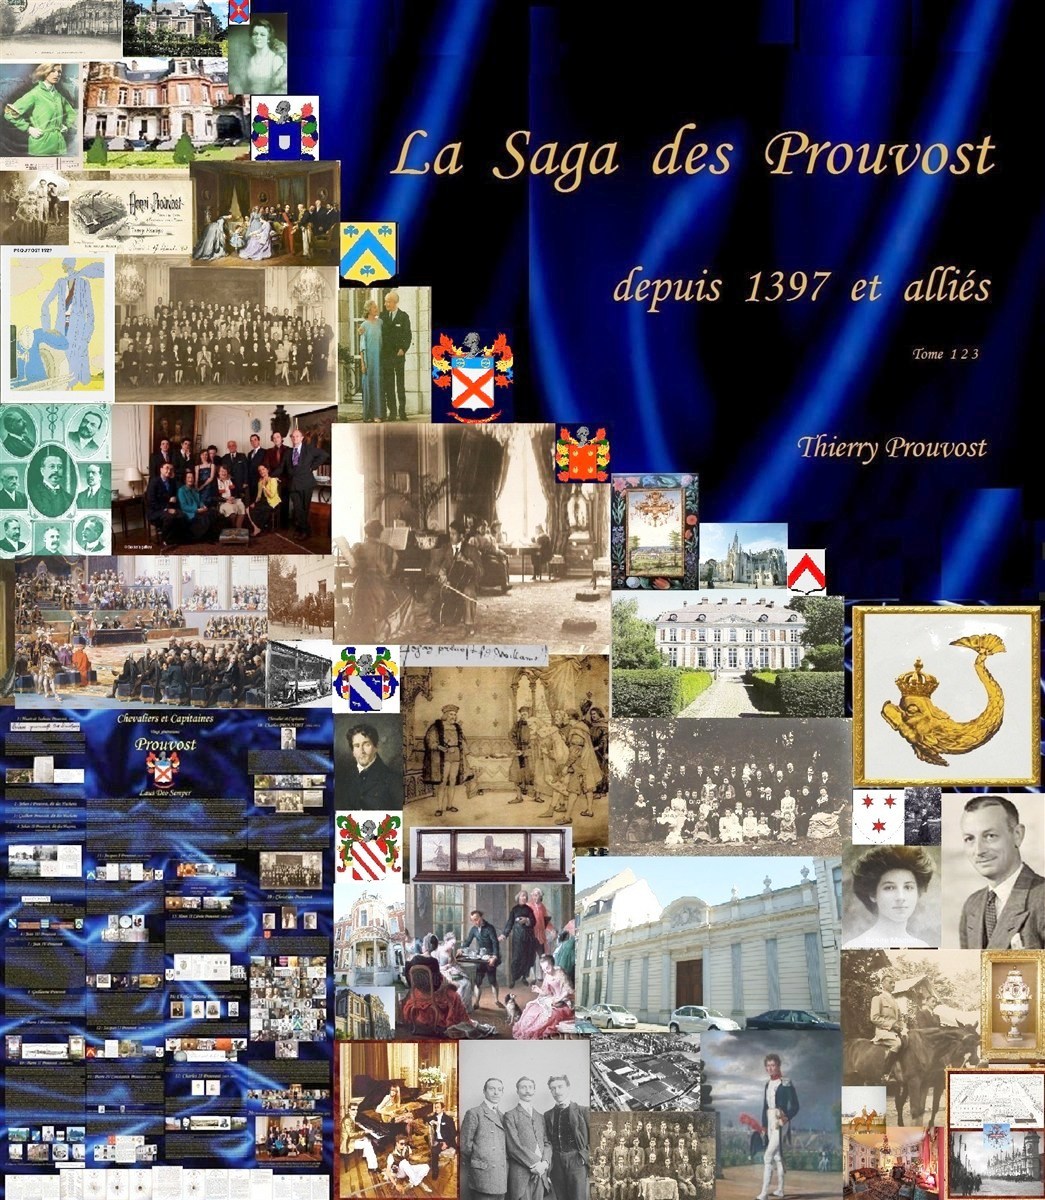 Couverture-Prouvost-Saga-Thierry-Prouvost-蒂埃里·普罗沃